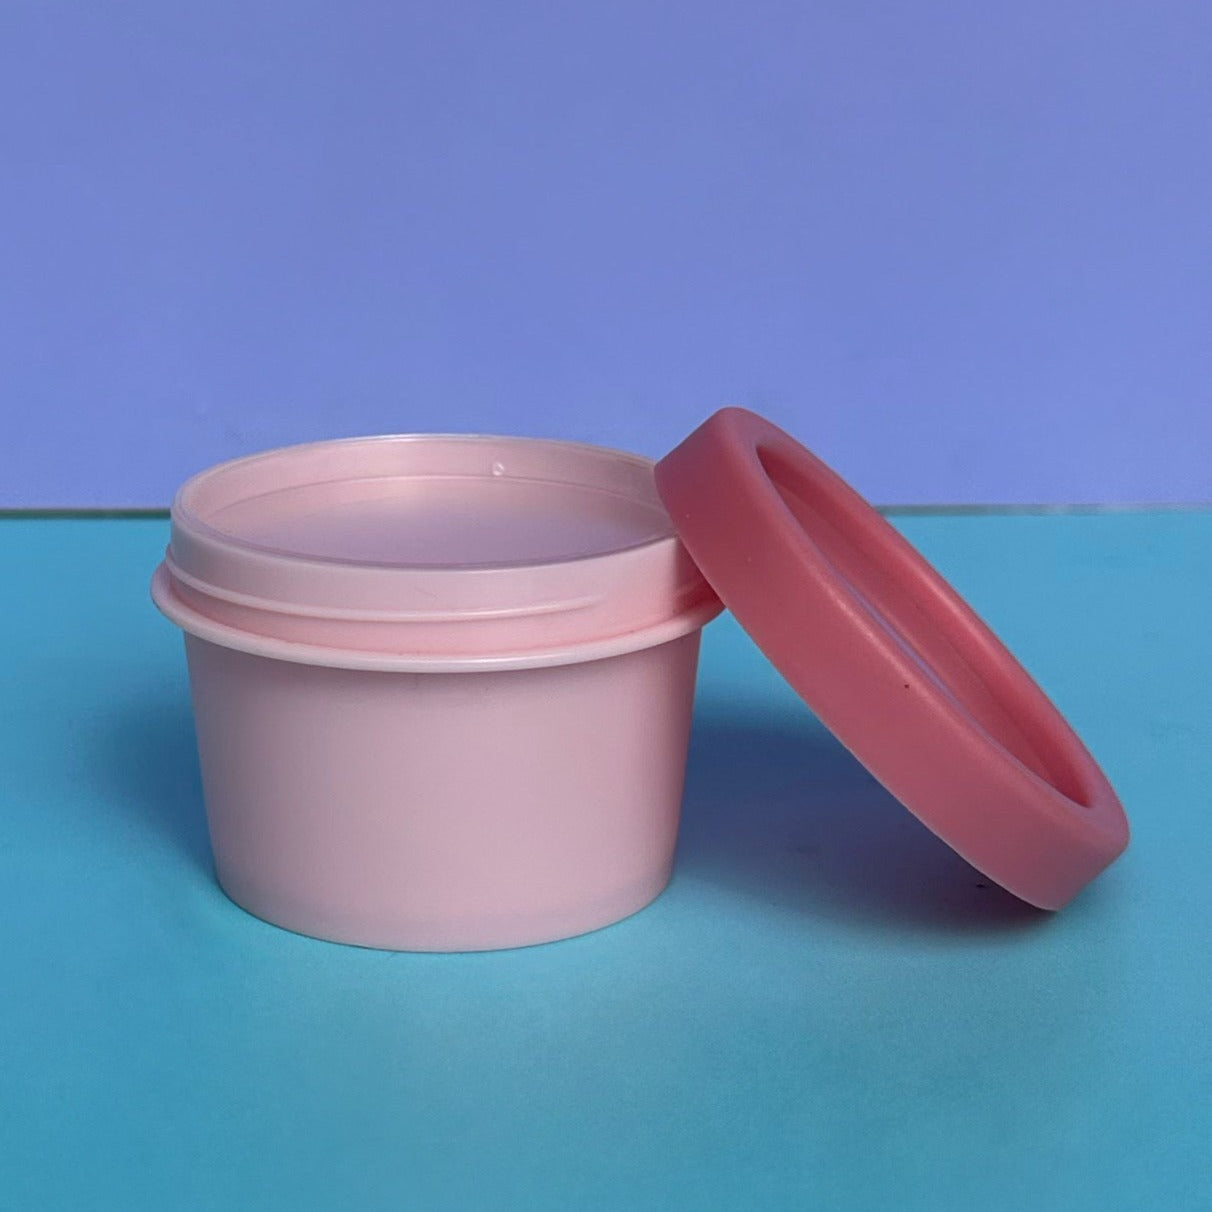 50ml plastic ice cream tub - assorted colors